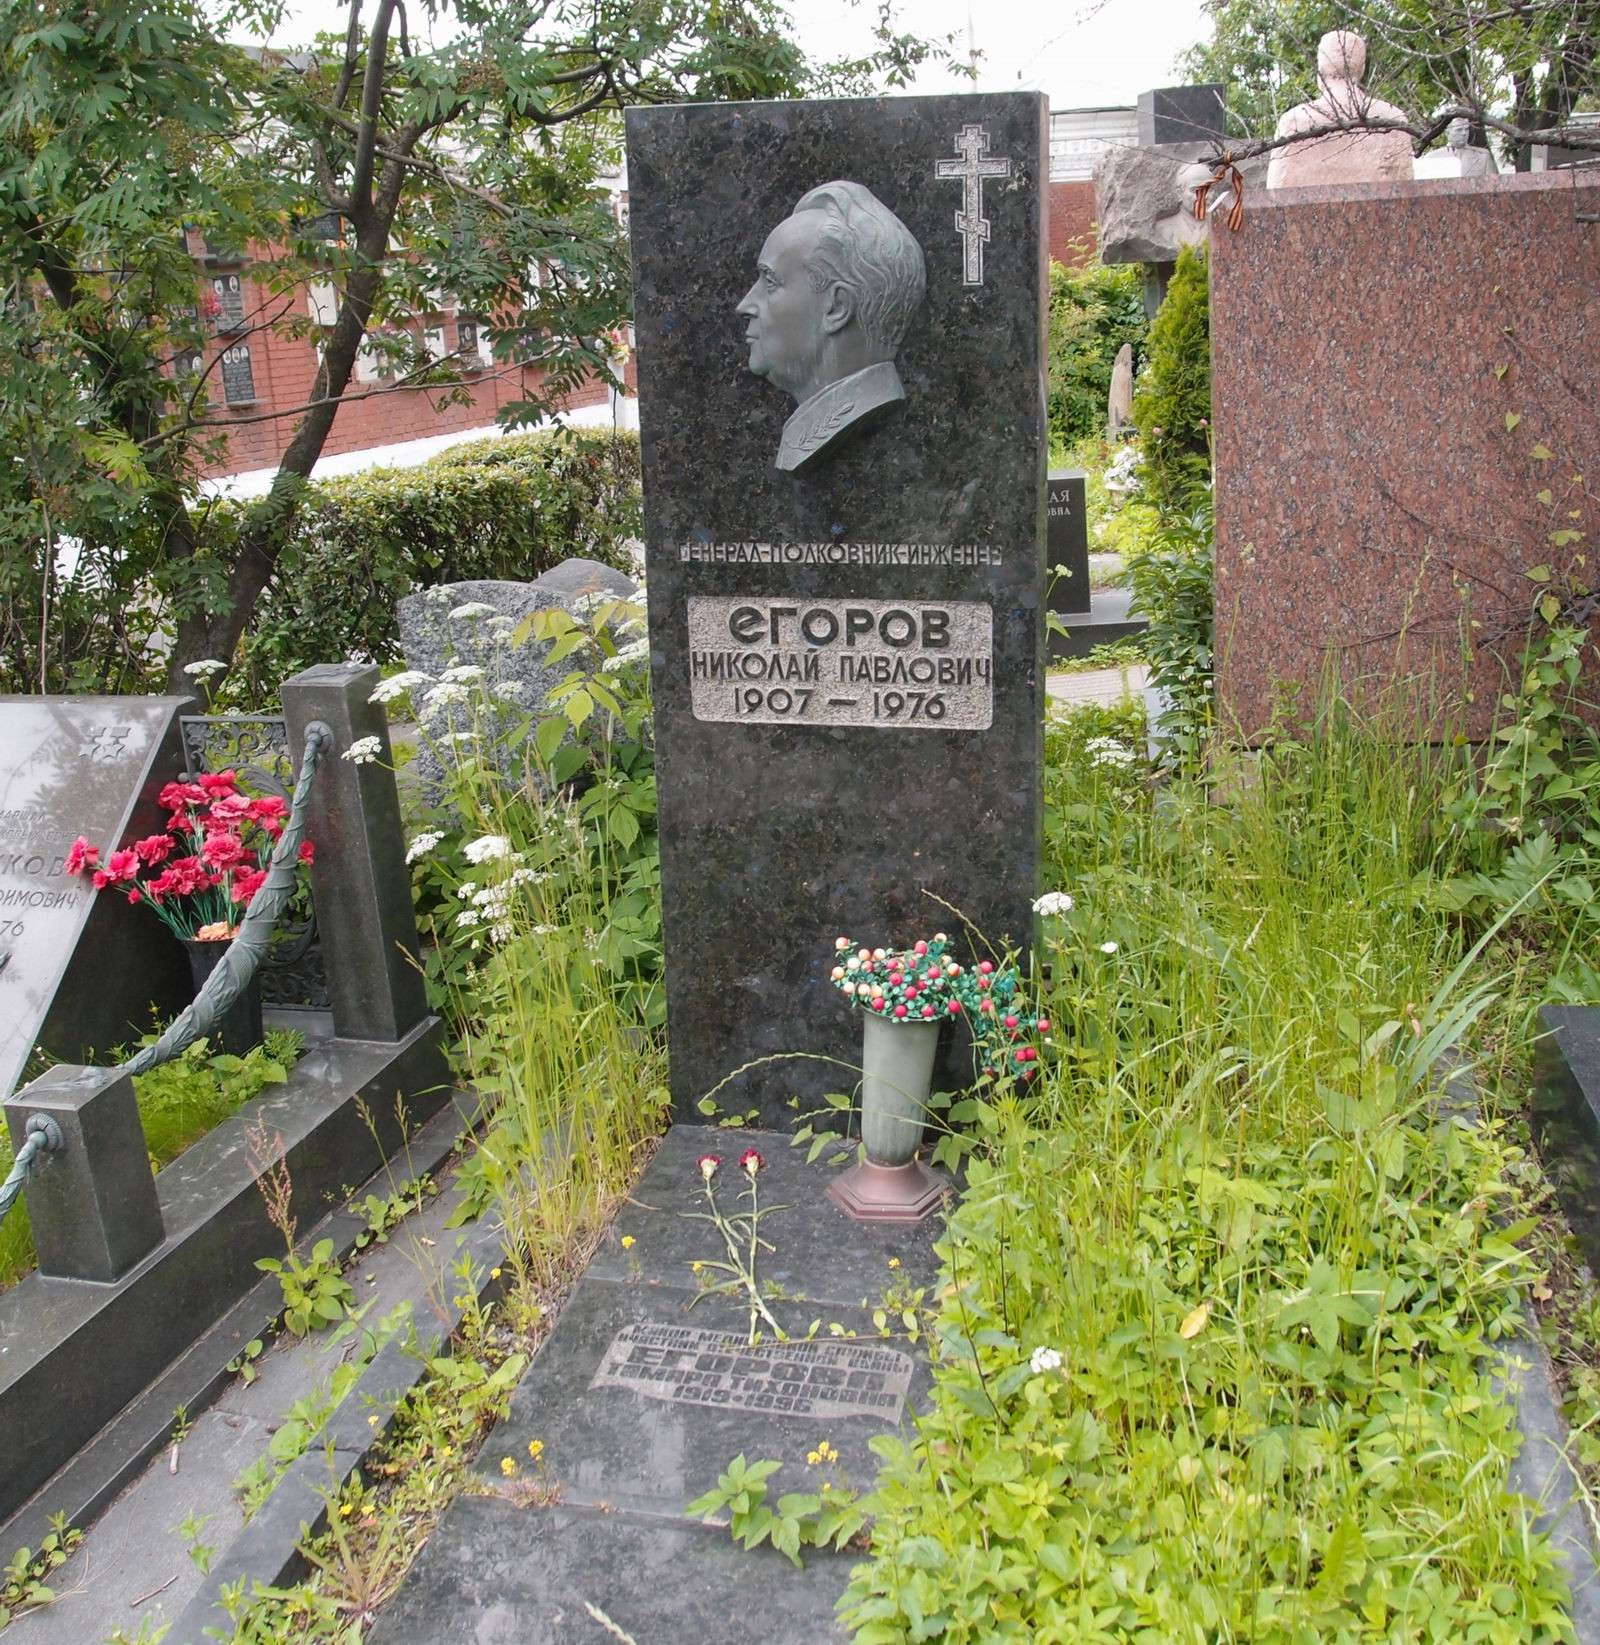 Памятник на могиле Егорова Н.П. (1907-1976), ск. Г.Постников, на Новодевичьем кладбище (7-11-20).